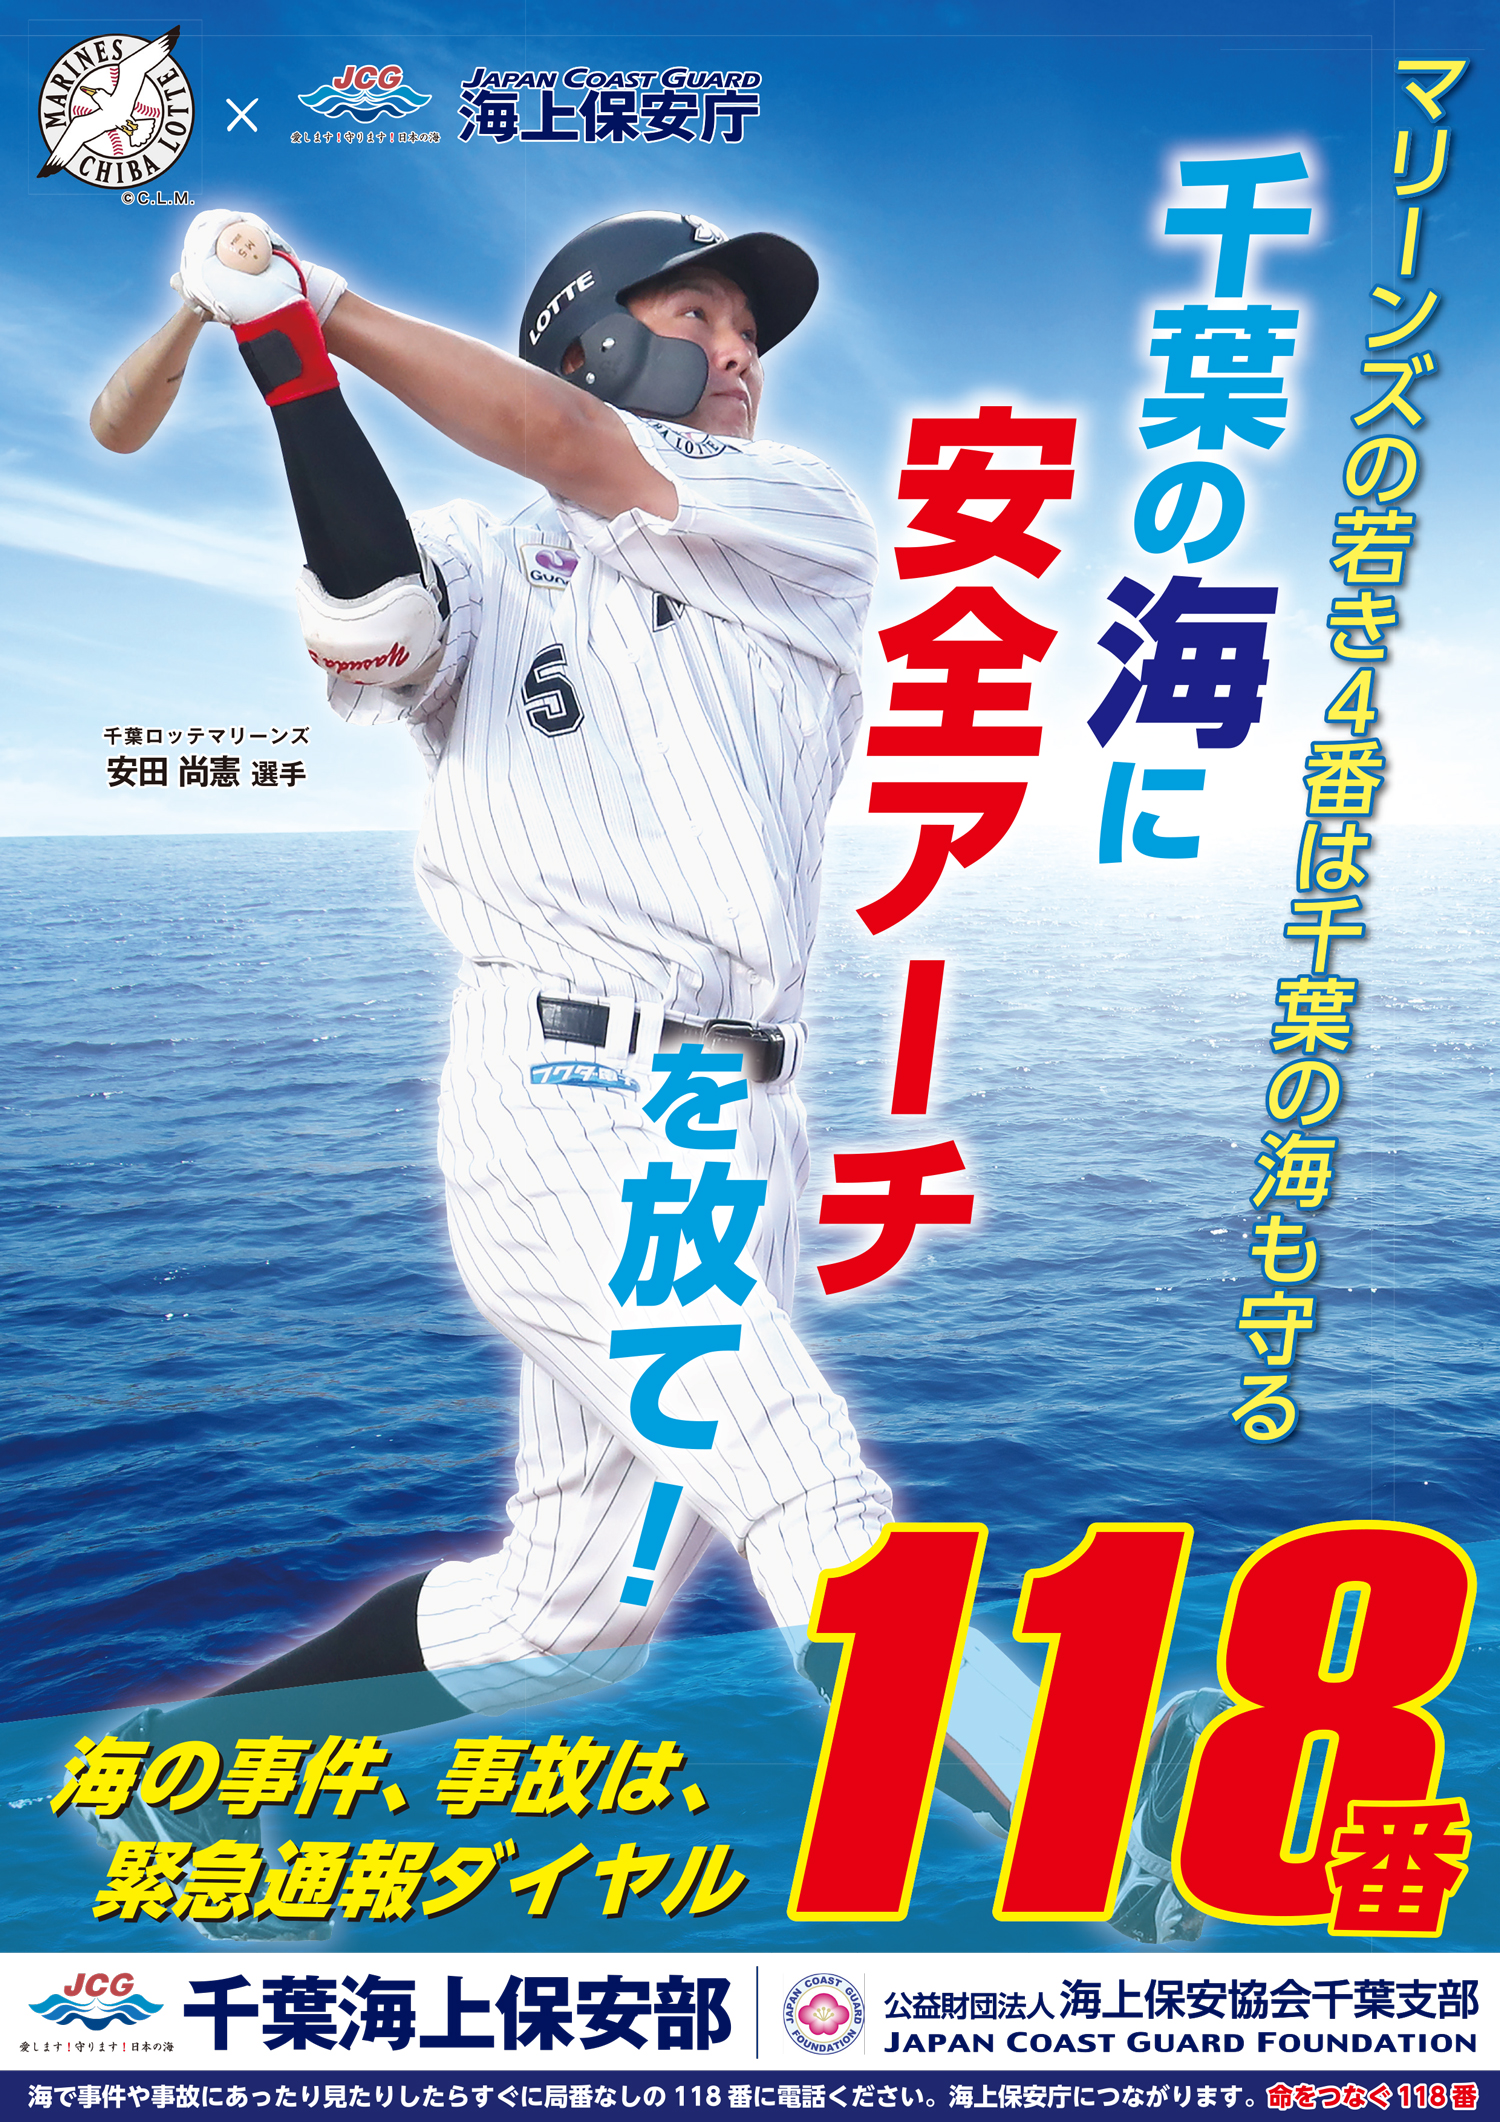 ロッテ・安田、千葉海上保安部のポスター起用「本当にありがたいです